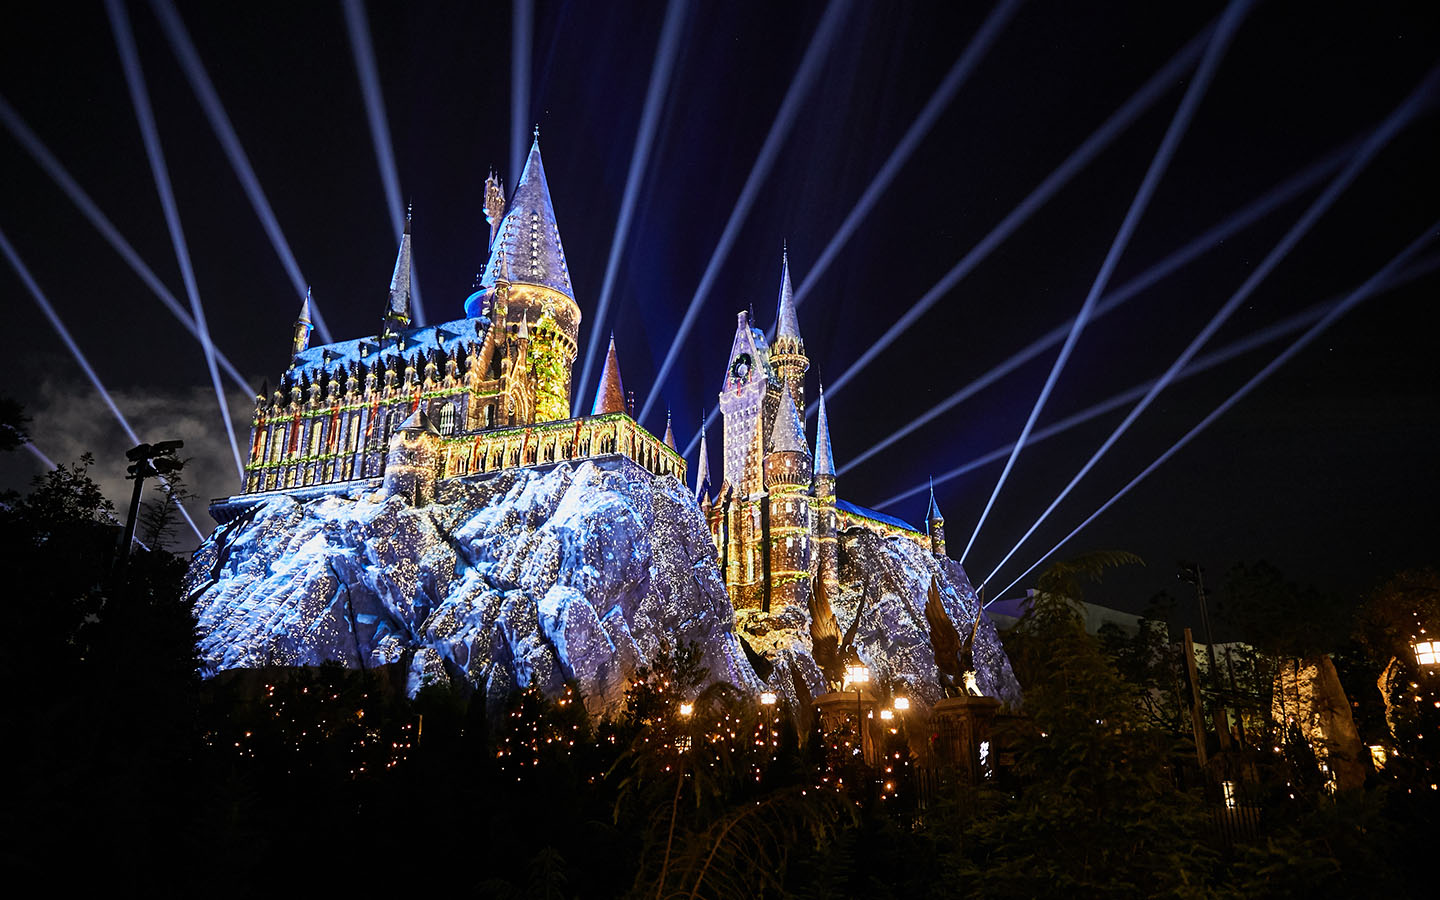 Show de projeções de Natal no castelo de Hogwarts no Islands of Adventure. 